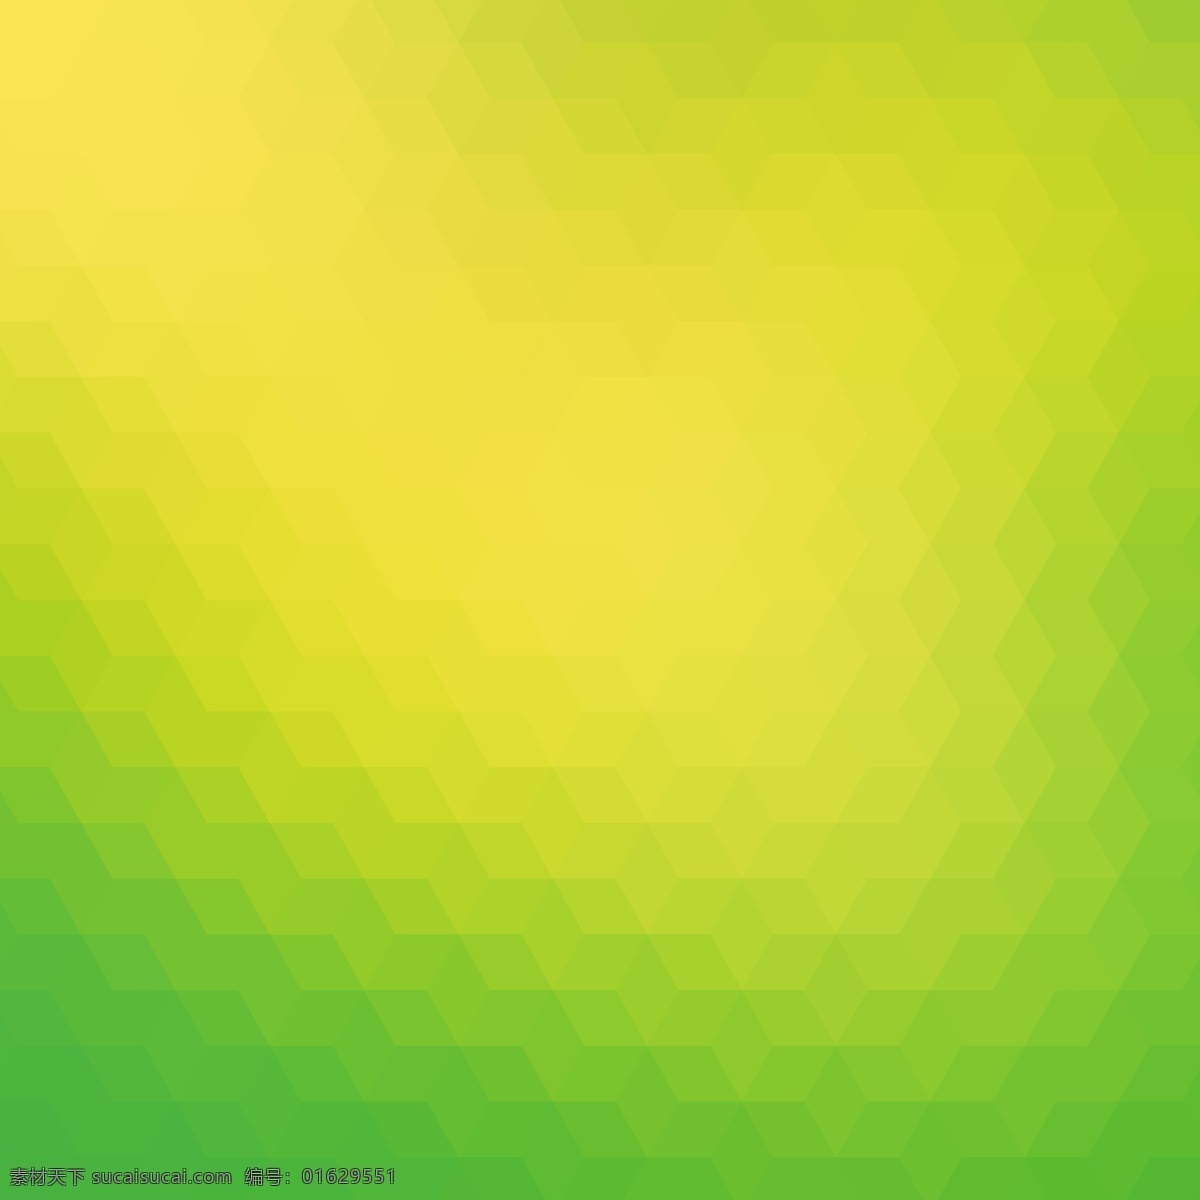 绿色 黄色 色调 多边形 背景 抽象 几何 三角形 菱形 绿色背景 壁纸 几何背景 矢量背景 黄 三角背景 梯度 黄背景